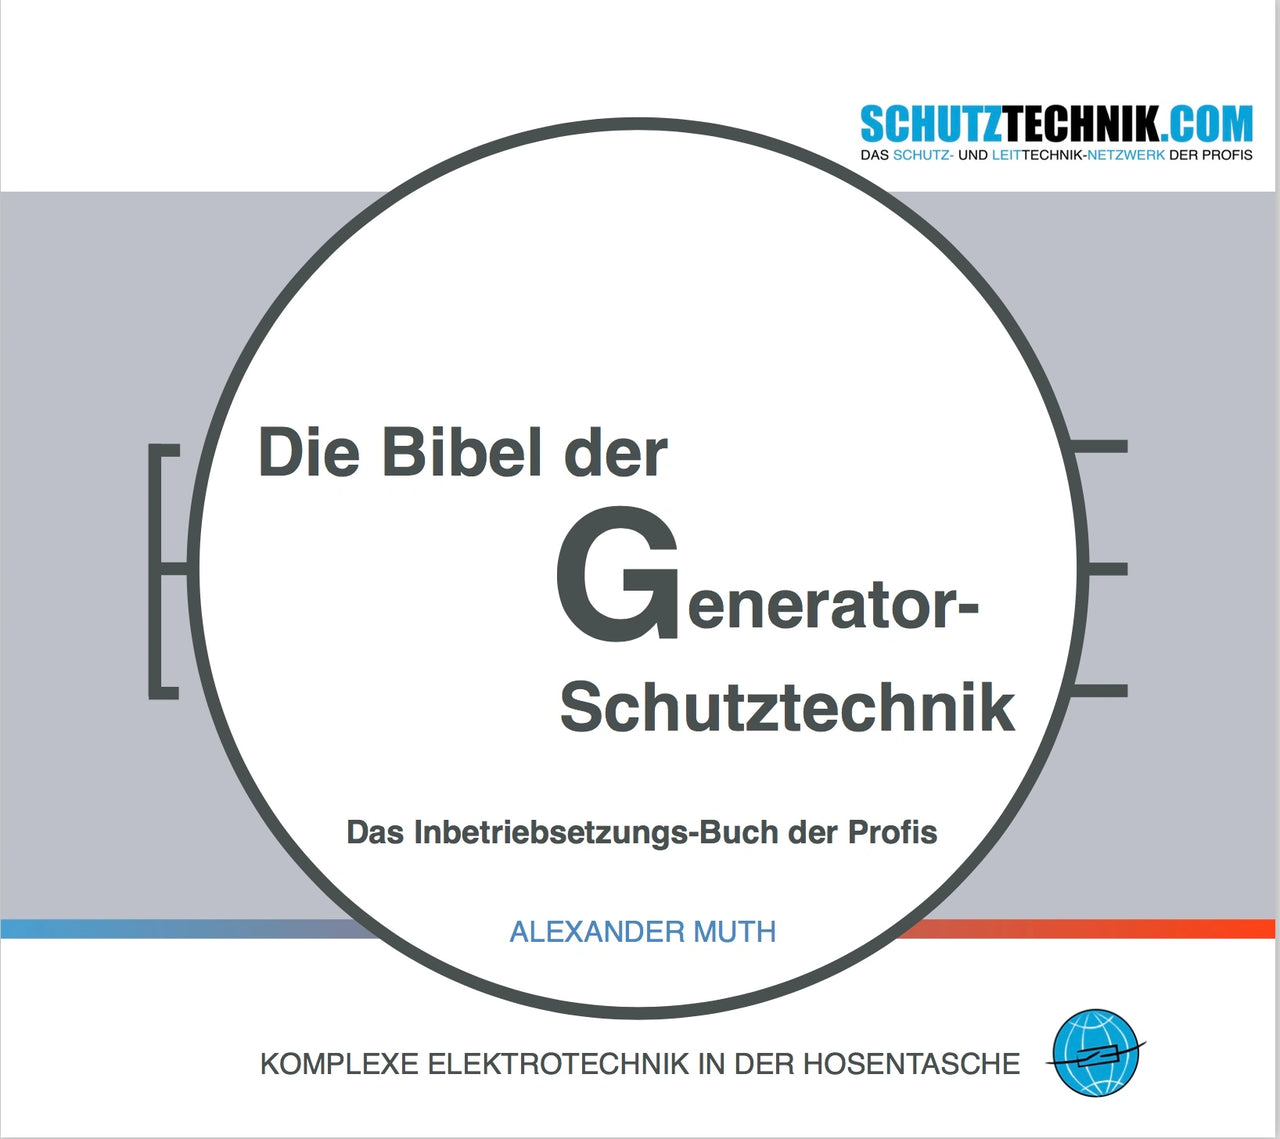 Die Bibel der Generator-Schutztechnik (E-Book, deutschsprachige Version)